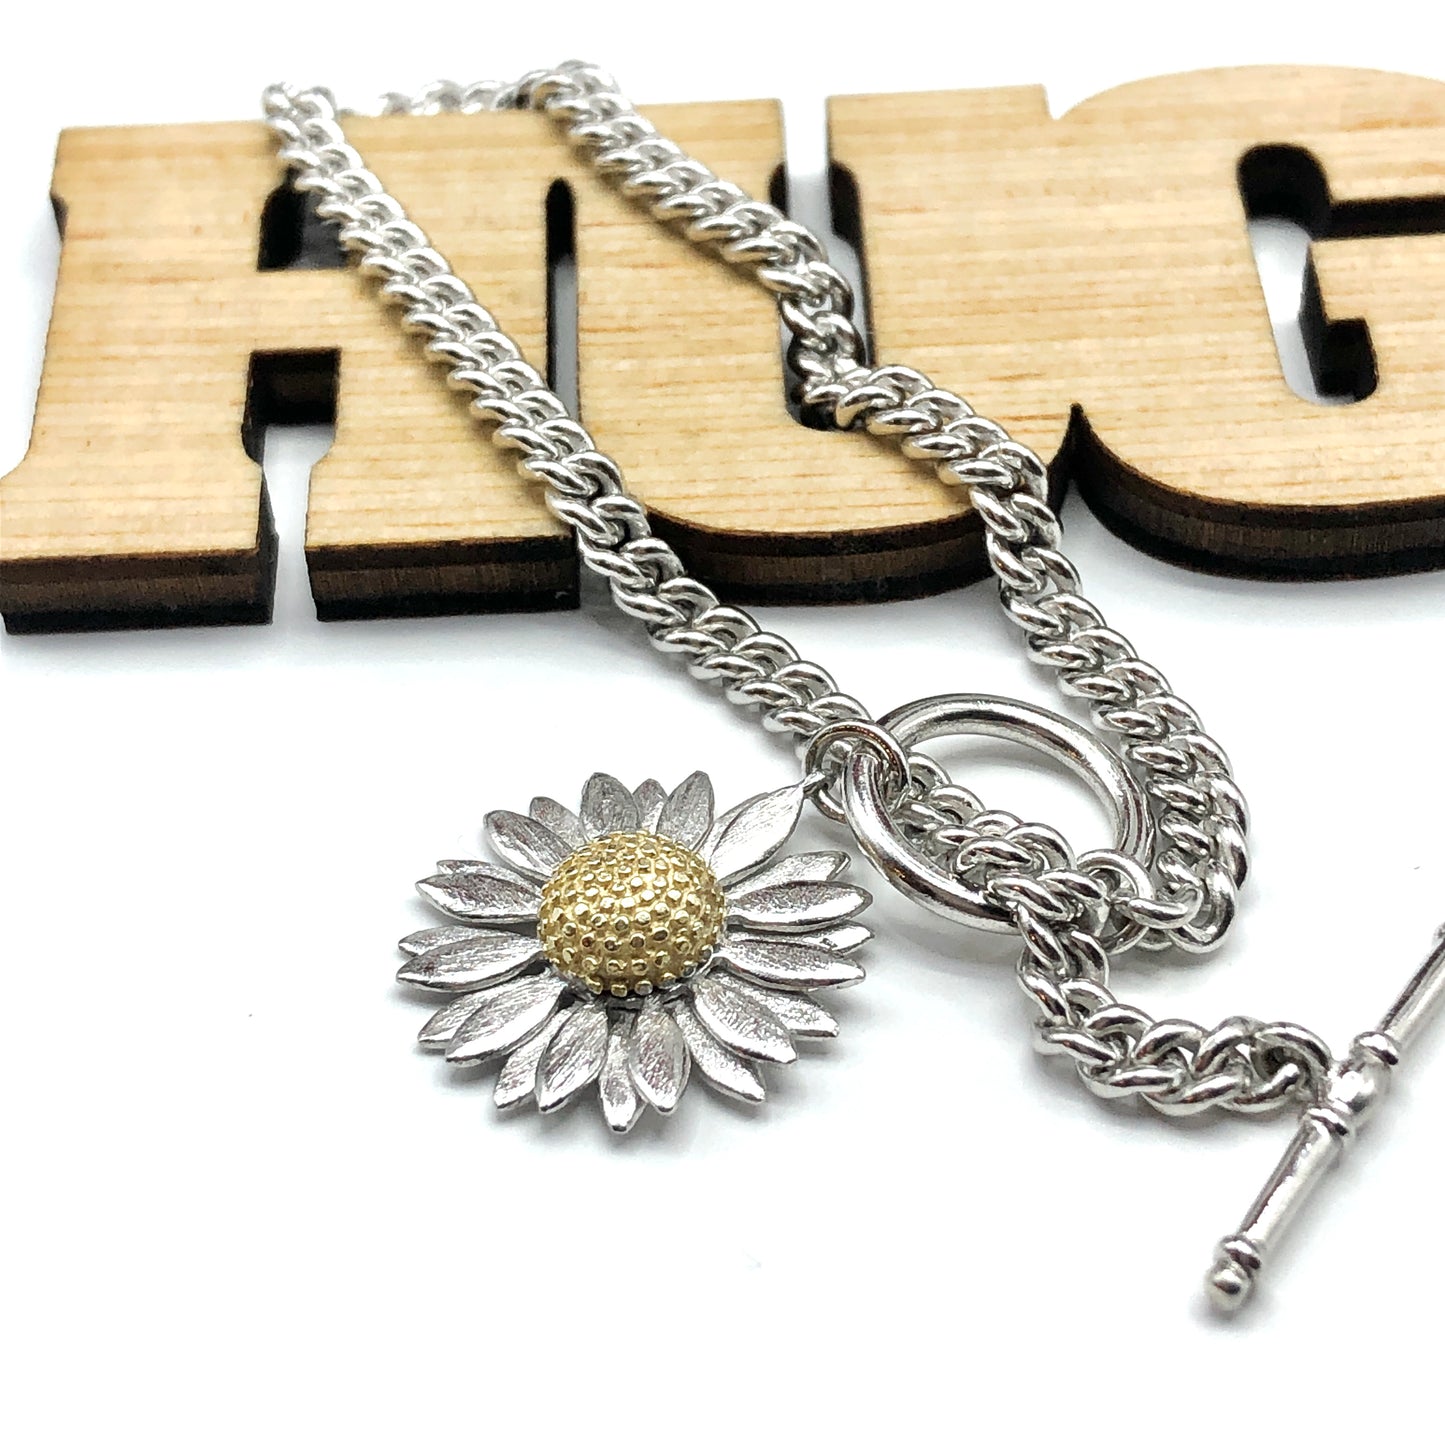 Silver Bracelet | Charm Bracelet | 925 Sterling Rustic Style Daisy Flower Toggle Bracelet